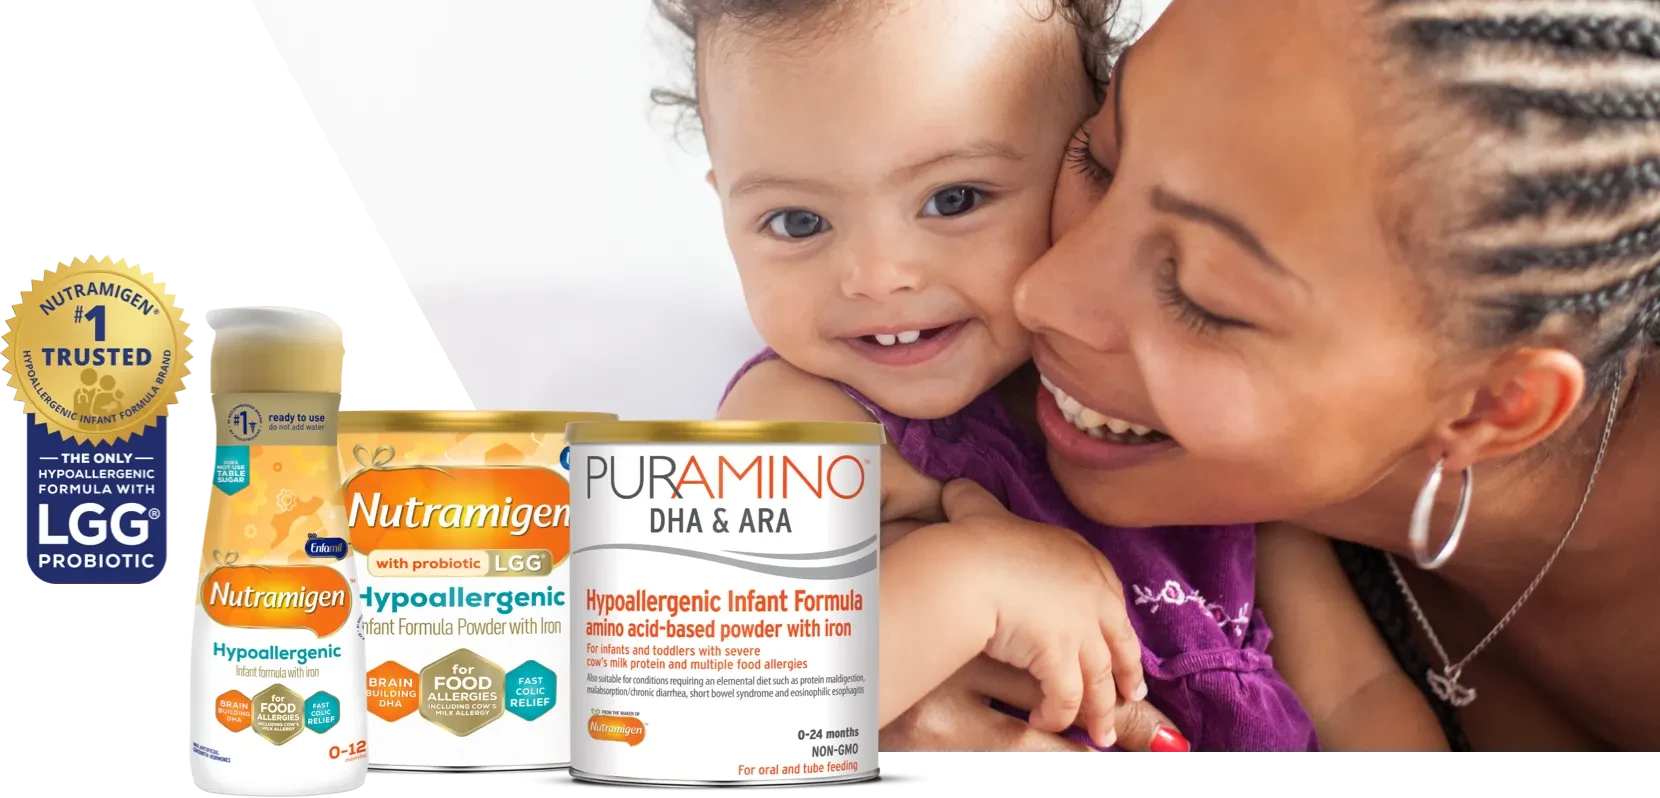 Nutramigen #1 Trusted Hypoallergenic Infant Formula Brand - The only hypoallergenic formula with LGG probiotic